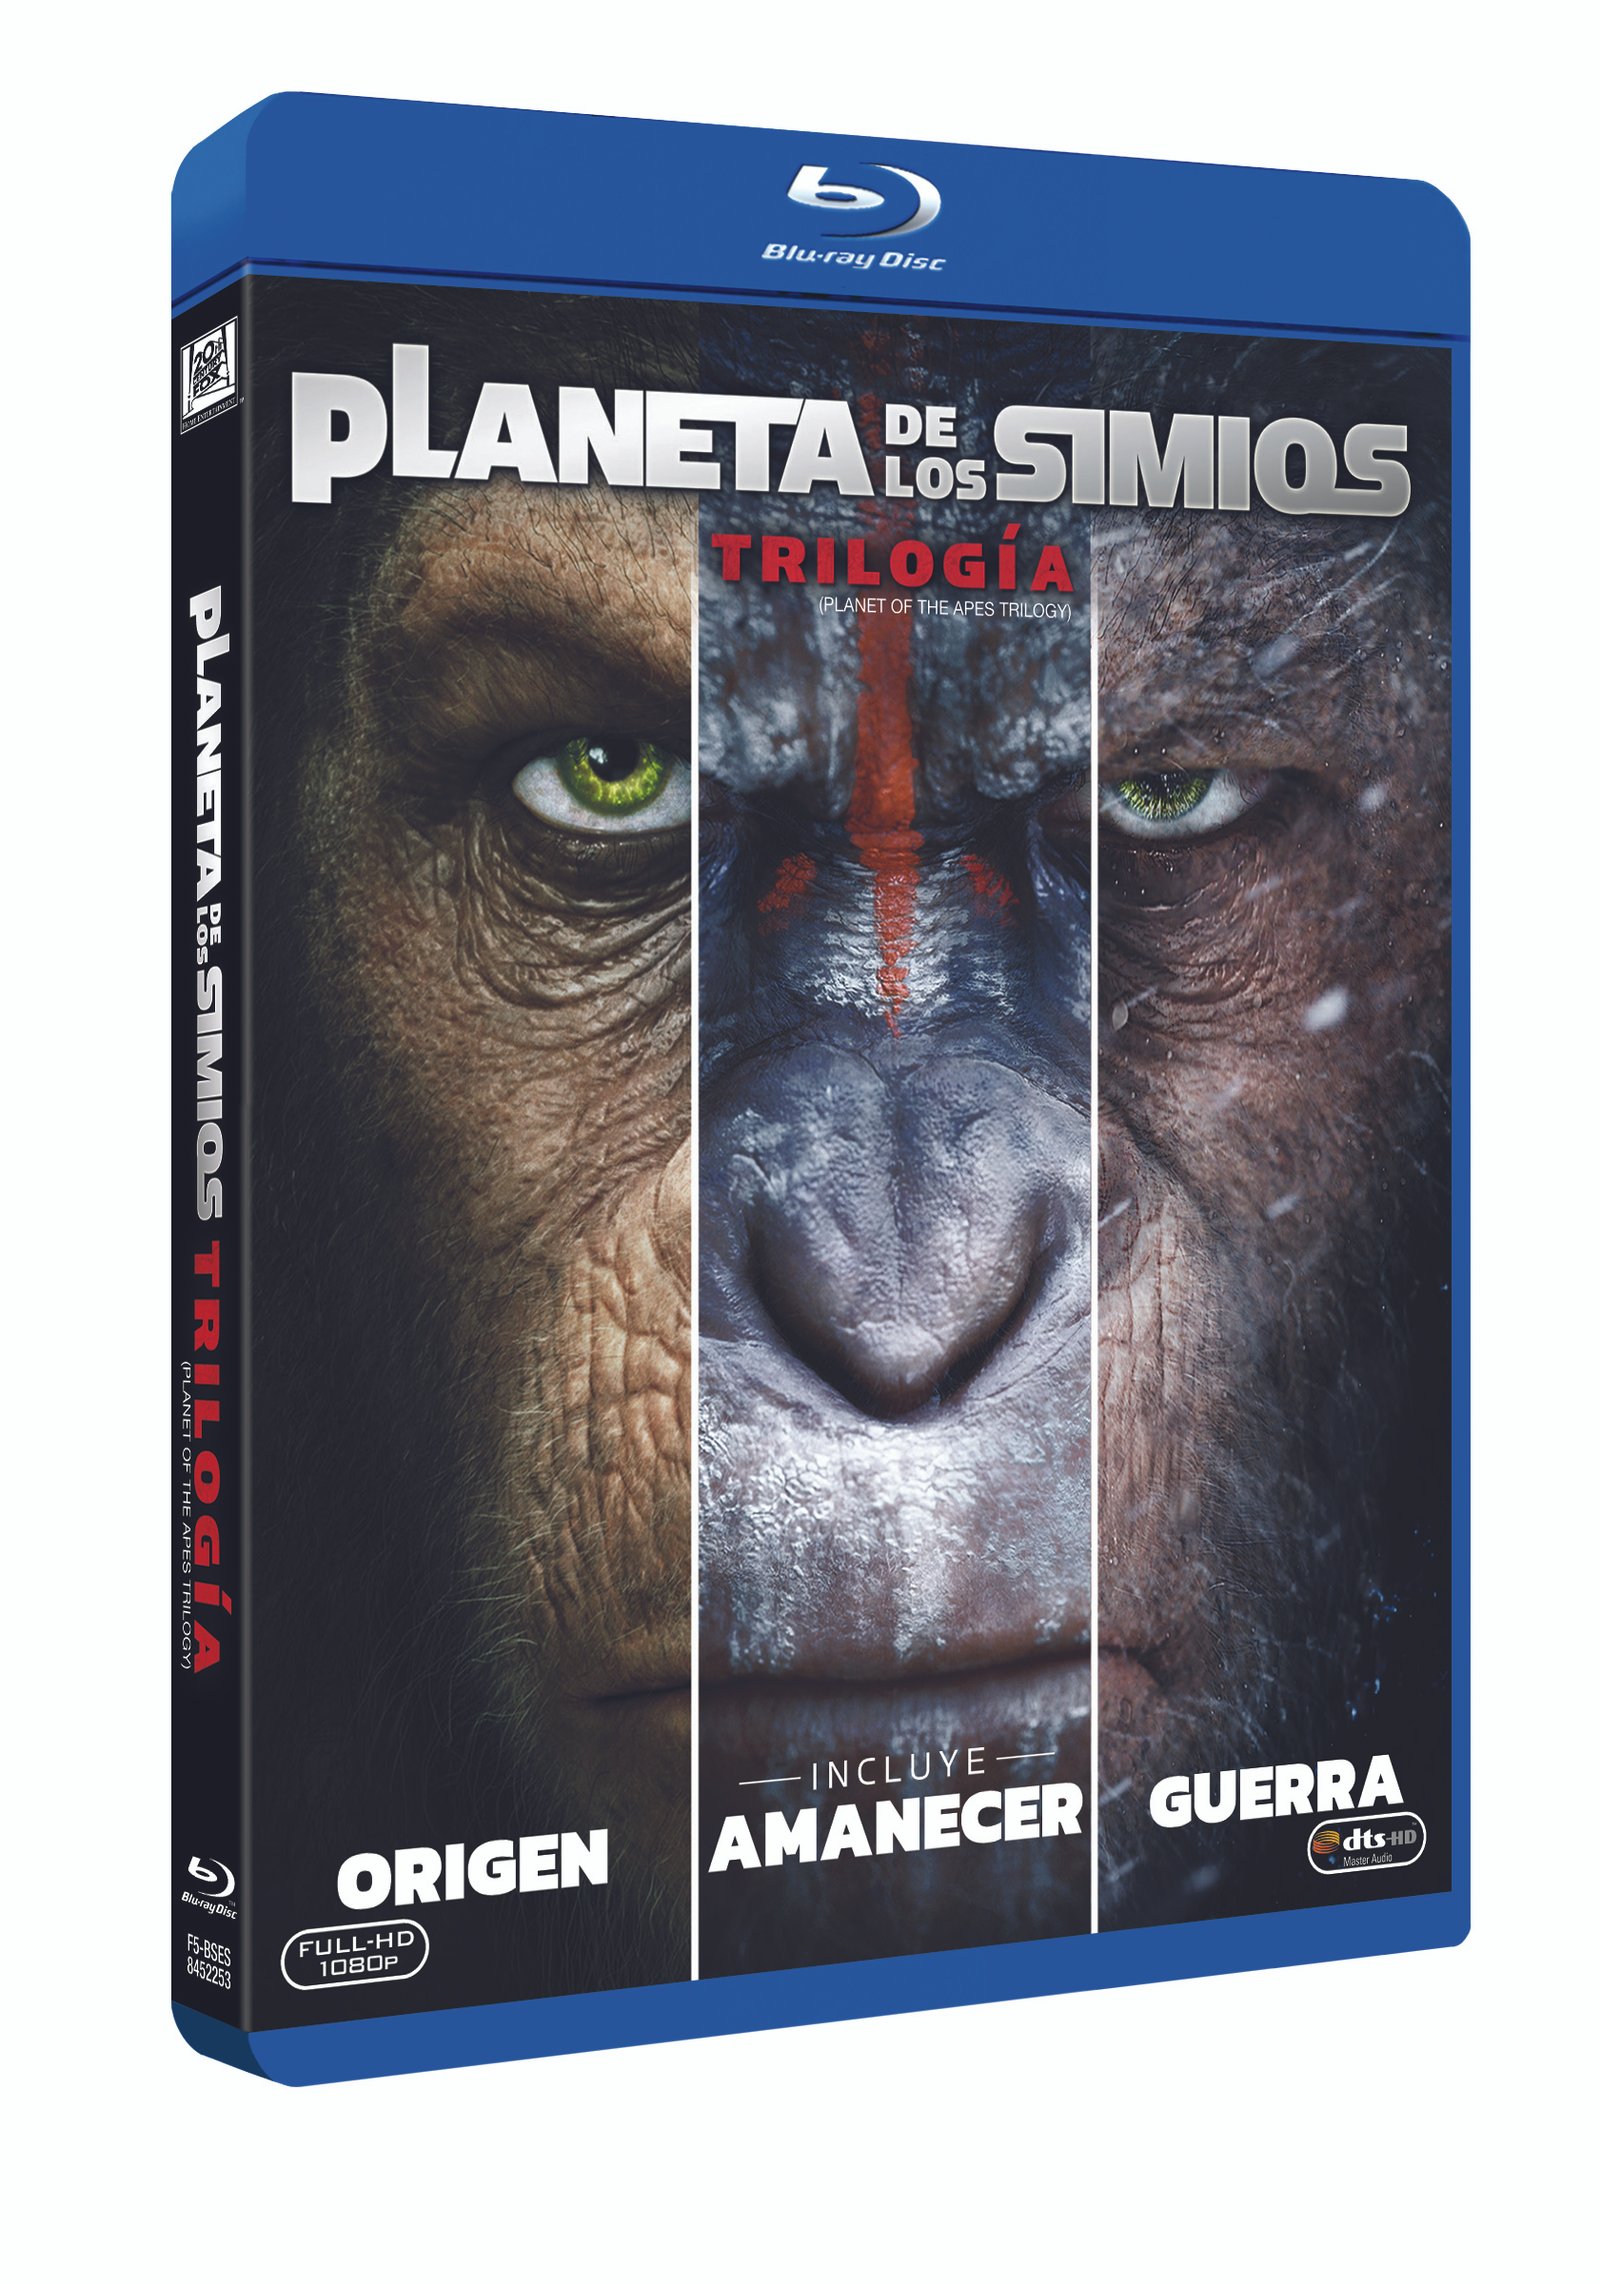 'Trilogía el Planeta de los Simios': Los orígenes de la saga en un solo pack el 13 de noviembre • En tu pantalla